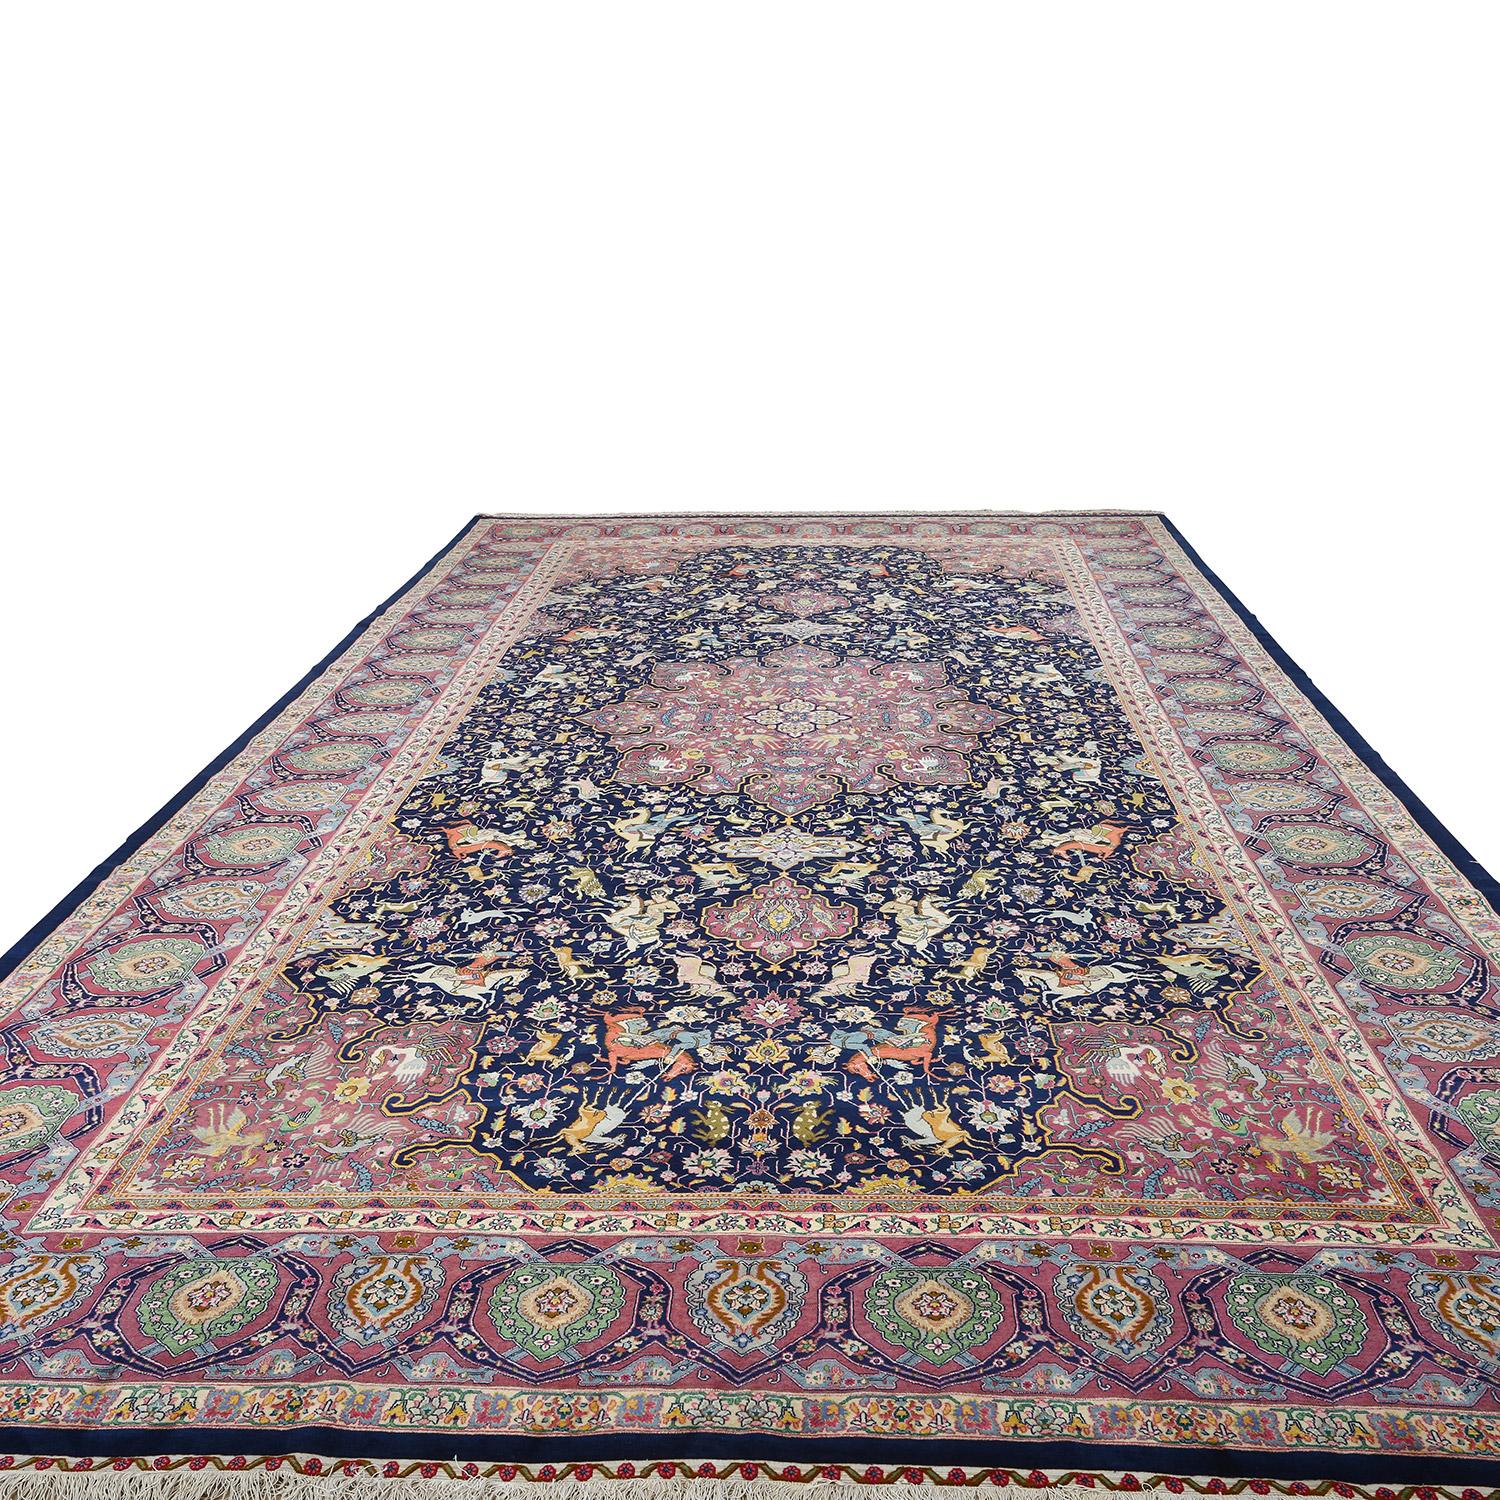 Ce tapis Heydarzadeh de Tabriz, d'une taille impressionnante de 16 pieds sur 9 pieds, est un véritable témoignage des sommets de l'artisanat des tapis persans. Ce qui le rend encore plus exceptionnel, c'est son illustre provenance, puisqu'il a été